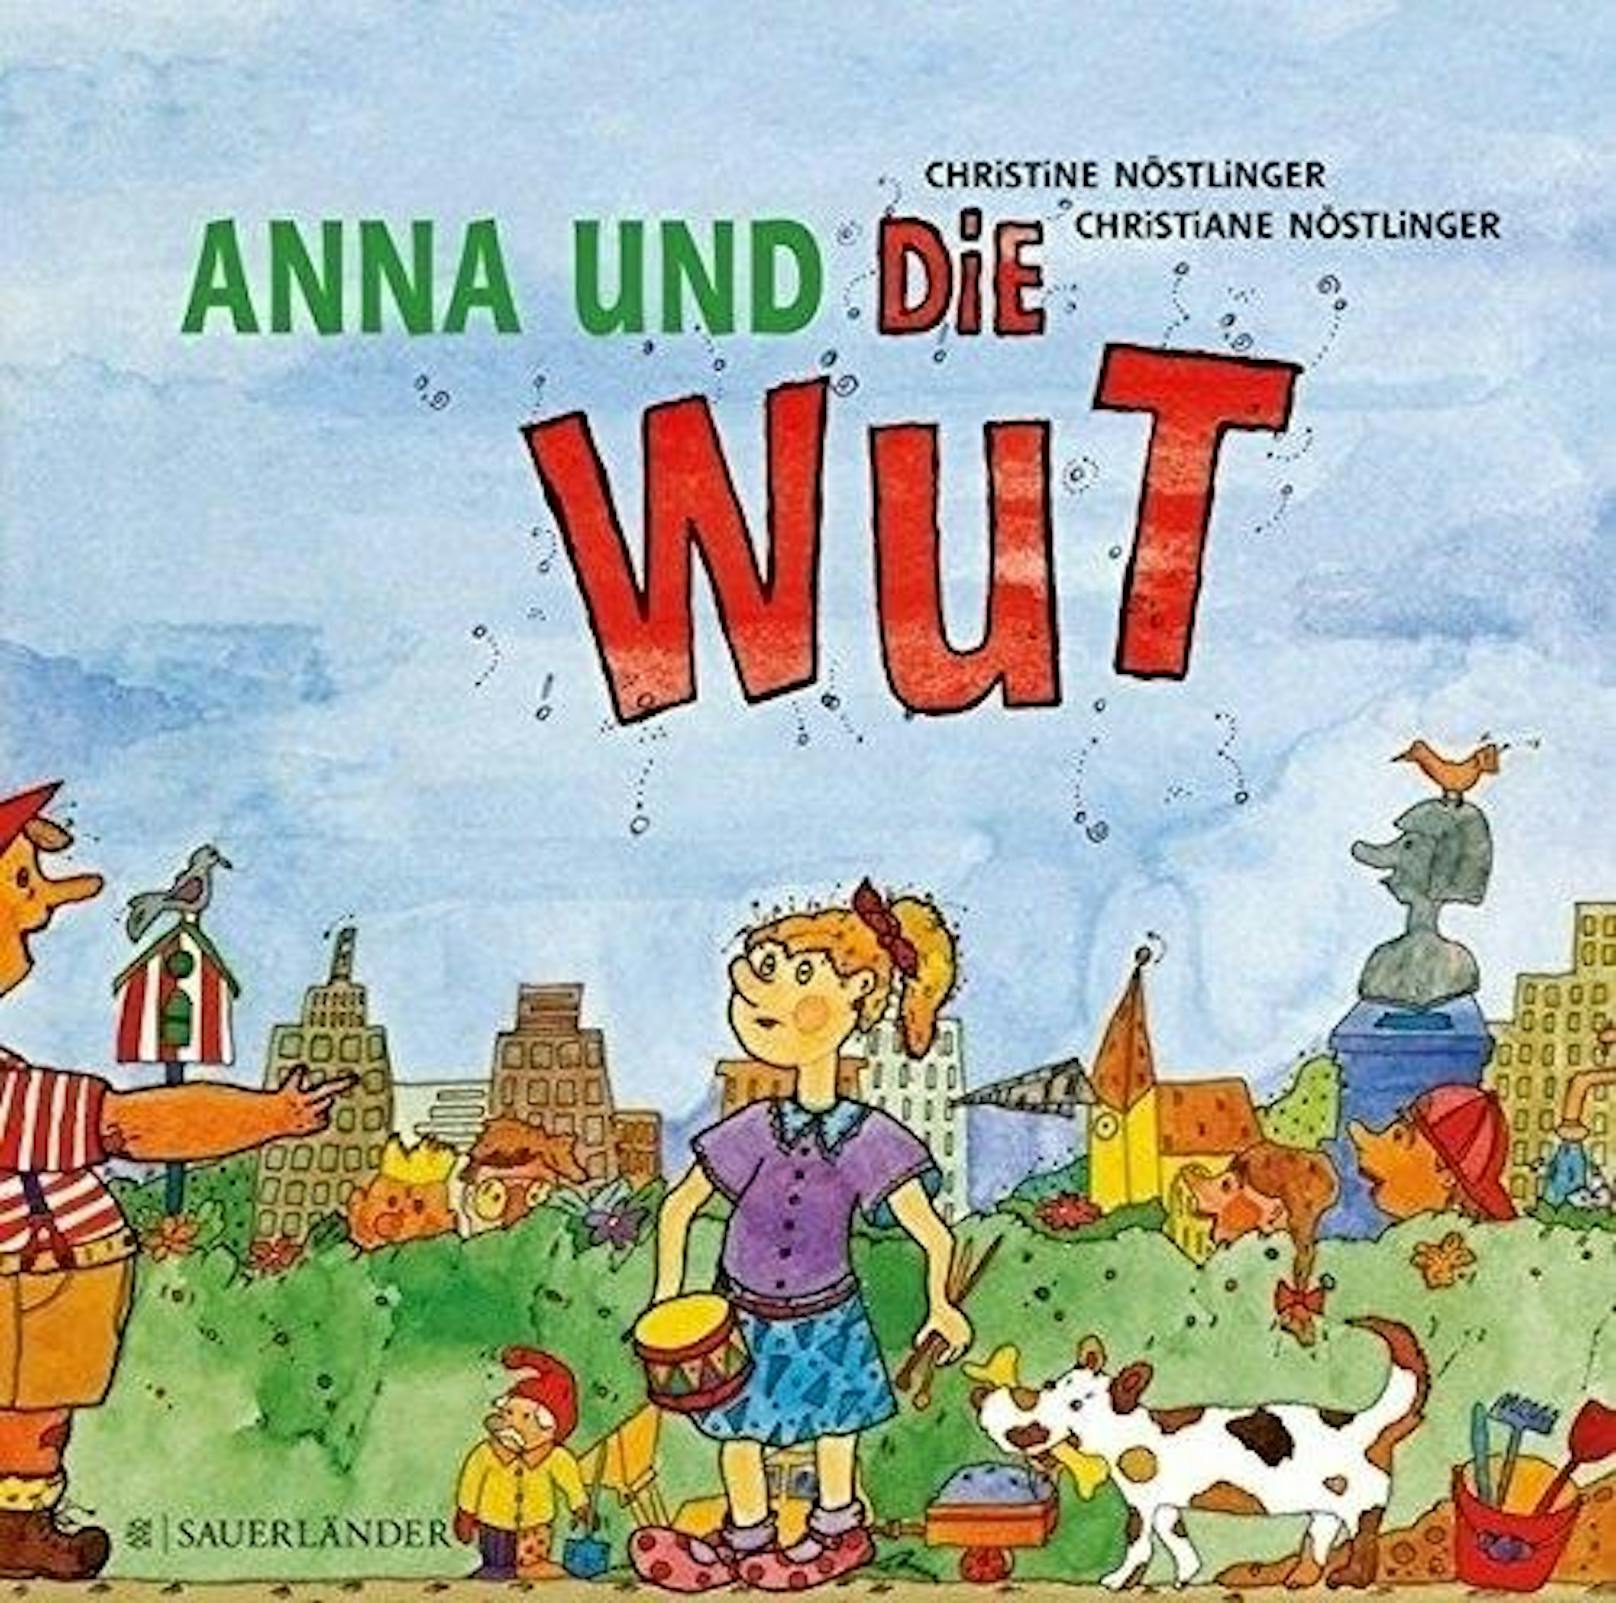 Anna und die Wut, 1990